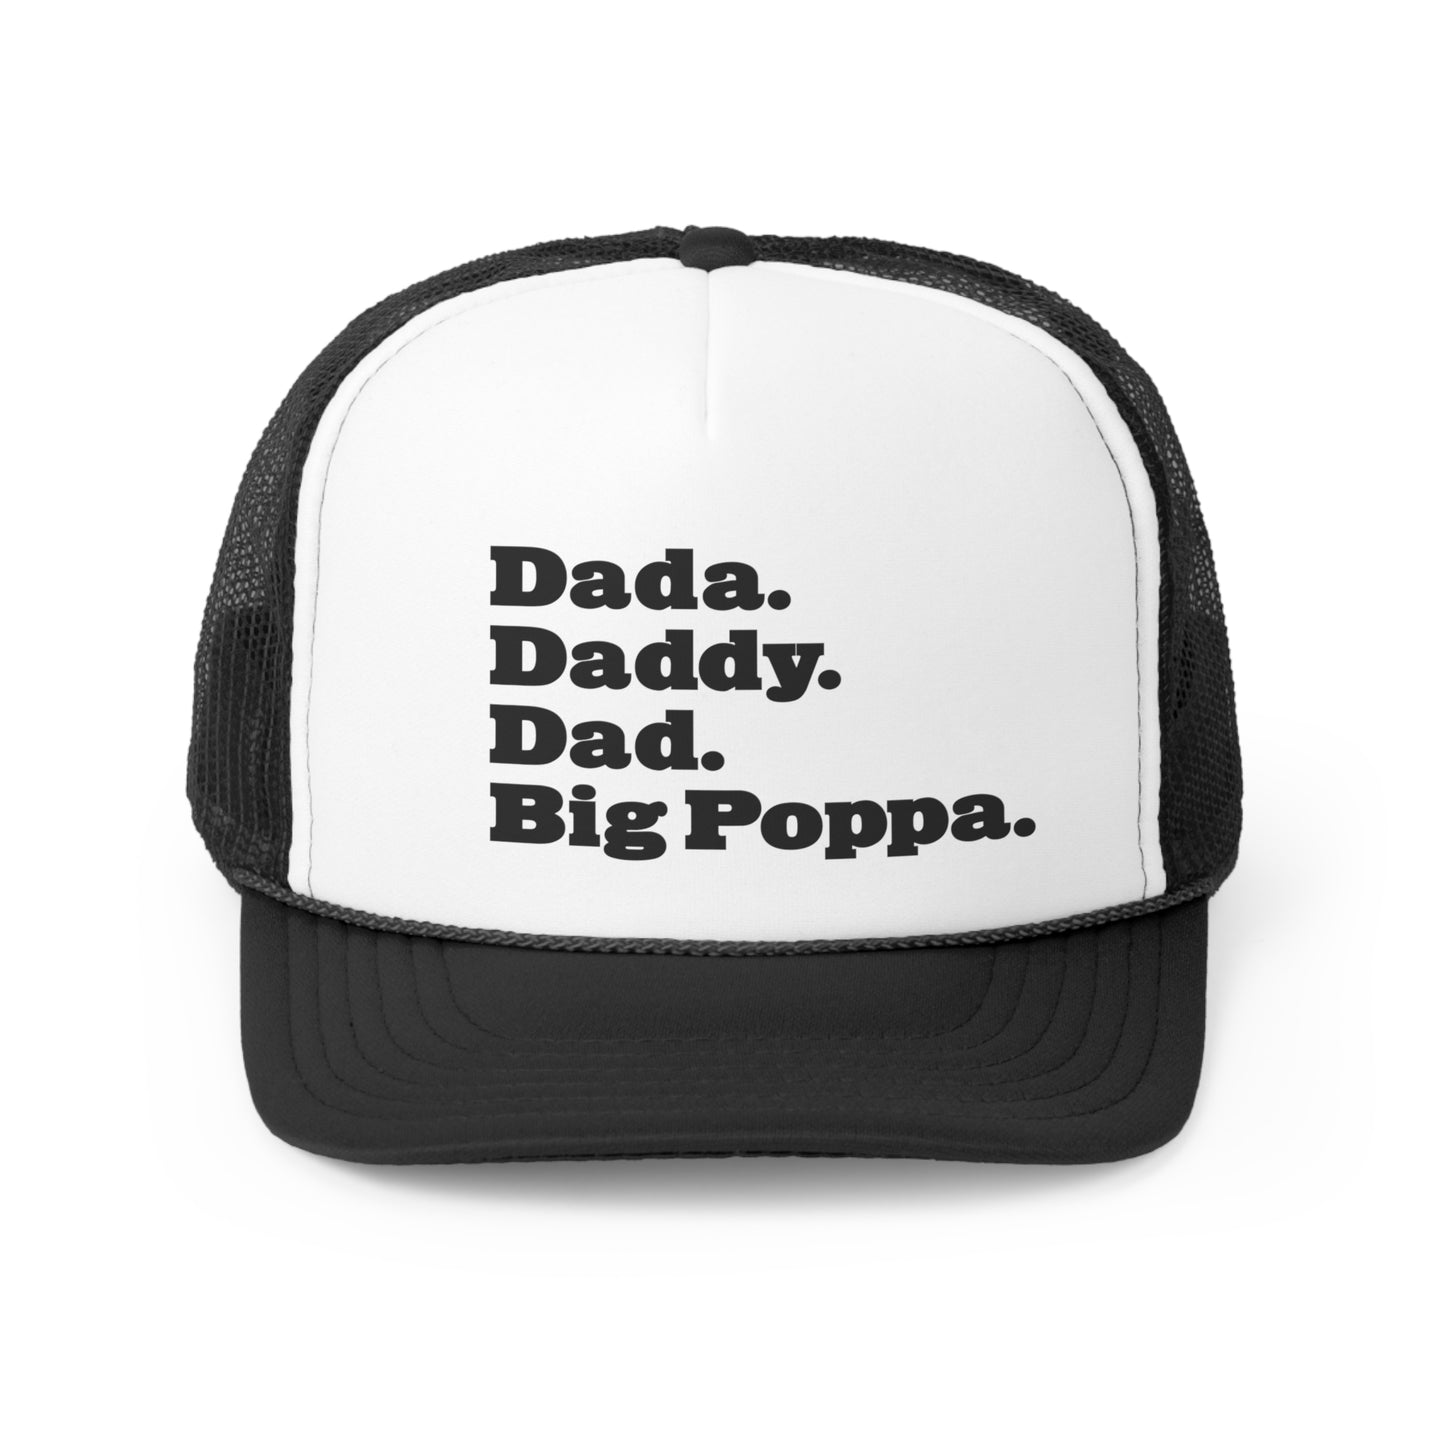 Dada Daddy Dad Big Poppa Snapback Trucker Hat Great Father's Day Gift for Dada Daddy Dad Big Poppa Cap, Hats for Dada Daddy Dad Big Poppa